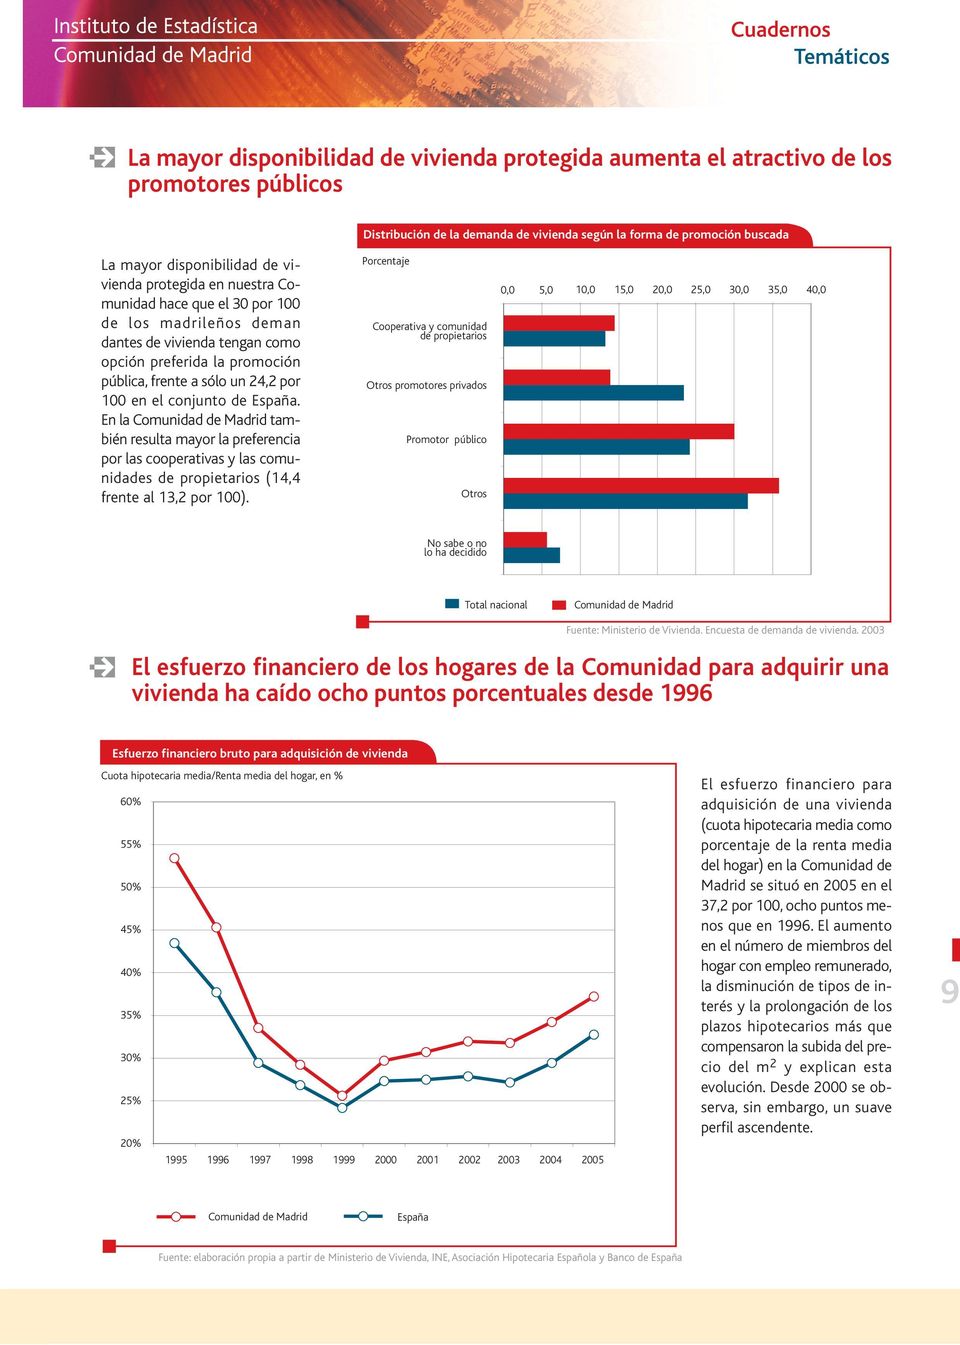 España. En la también resulta mayor la preferencia por las cooperativas y las comunidades de propietarios (14,4 frente al 13,2 por 1).